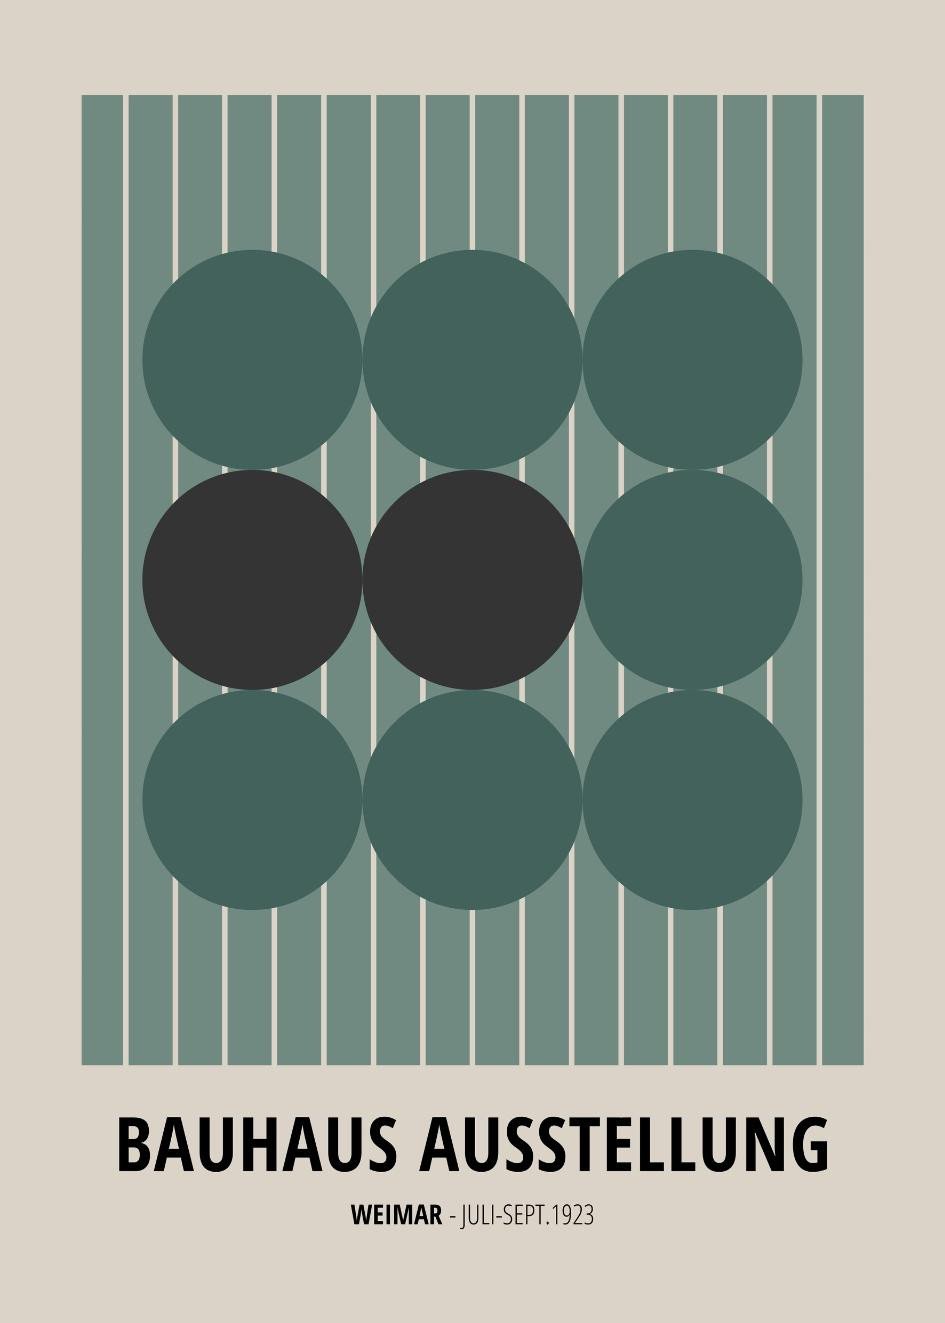 Bauhaus Ausstellung №24 Poster